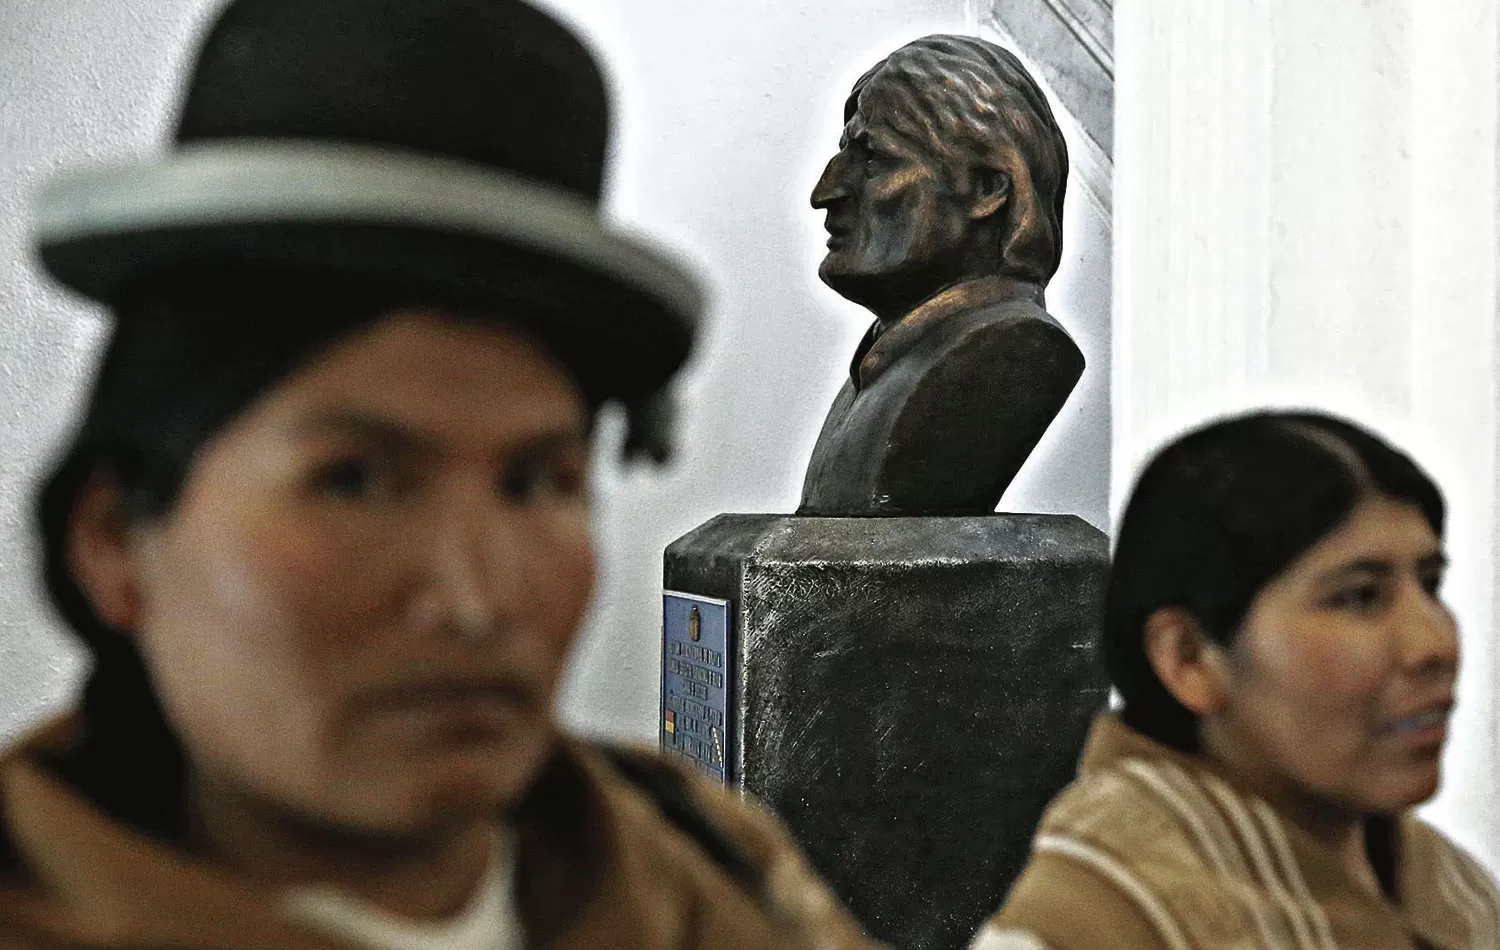 PRESENCIA. La efigie de Evo Morales está expuesta en el salón de ingreso del Parlamento boliviano, en La Paz.